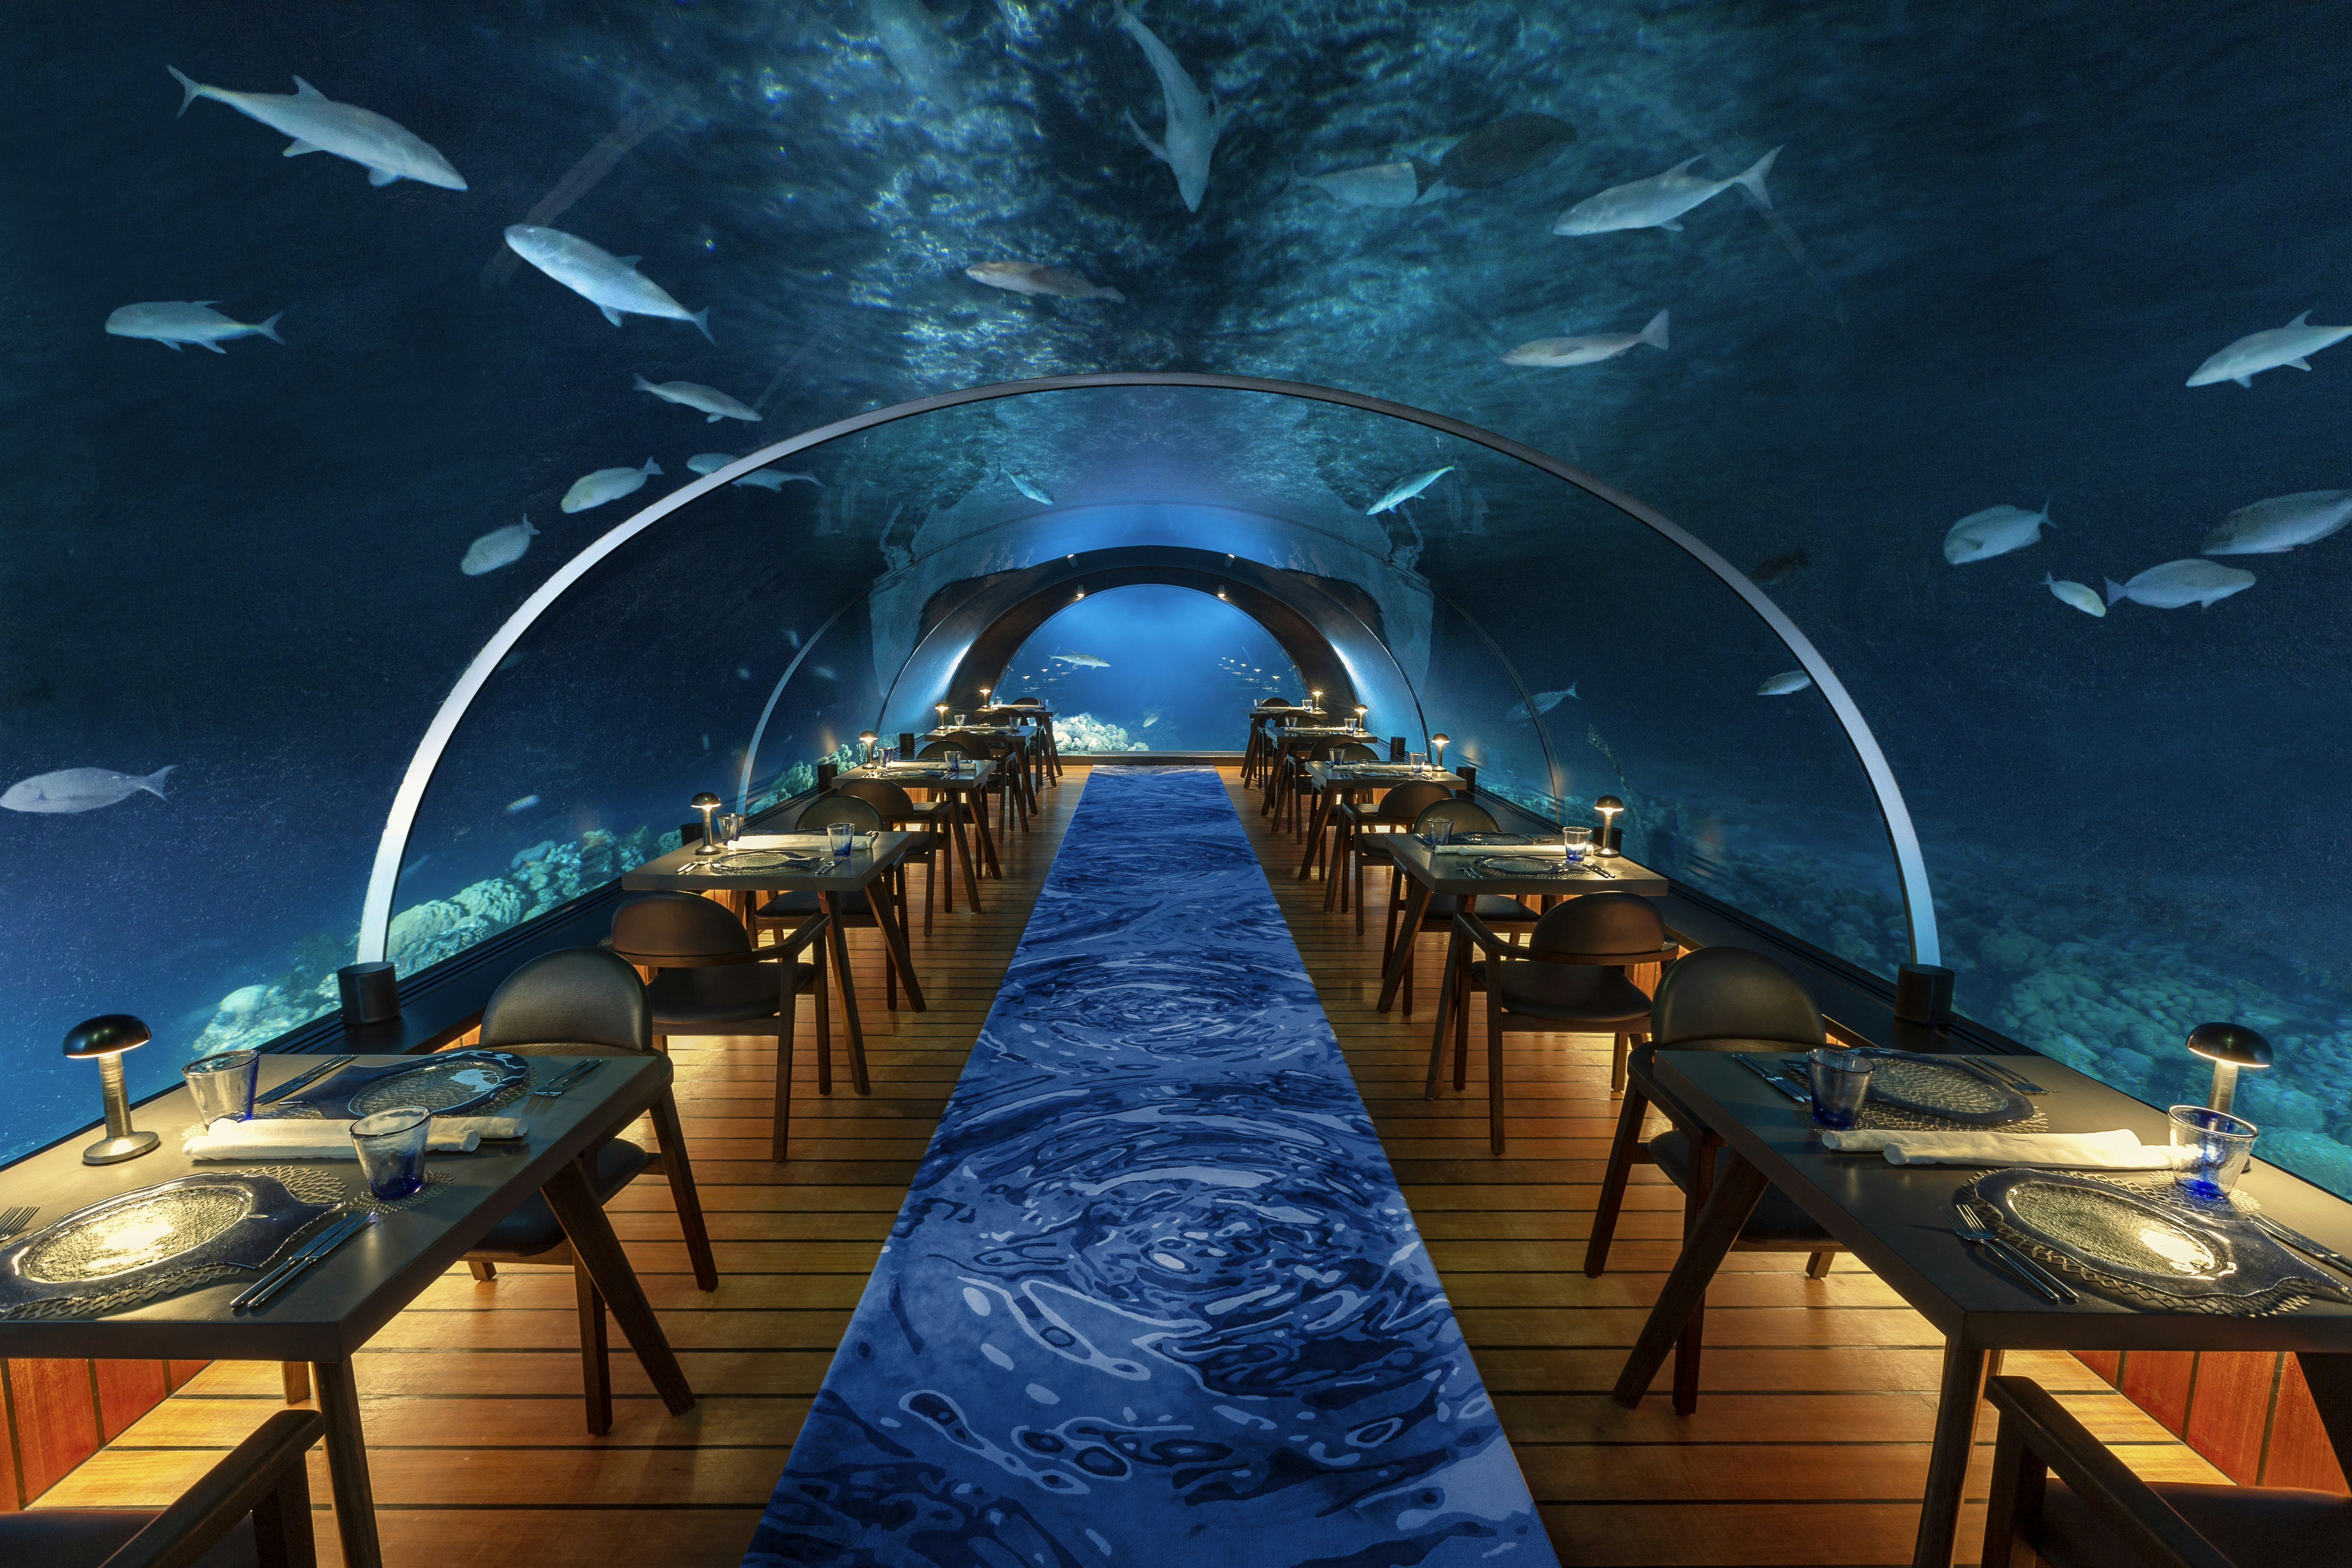 The dining room at 5.8 Undersea Restaurant at Hurawalhi Island Resort, Maldives